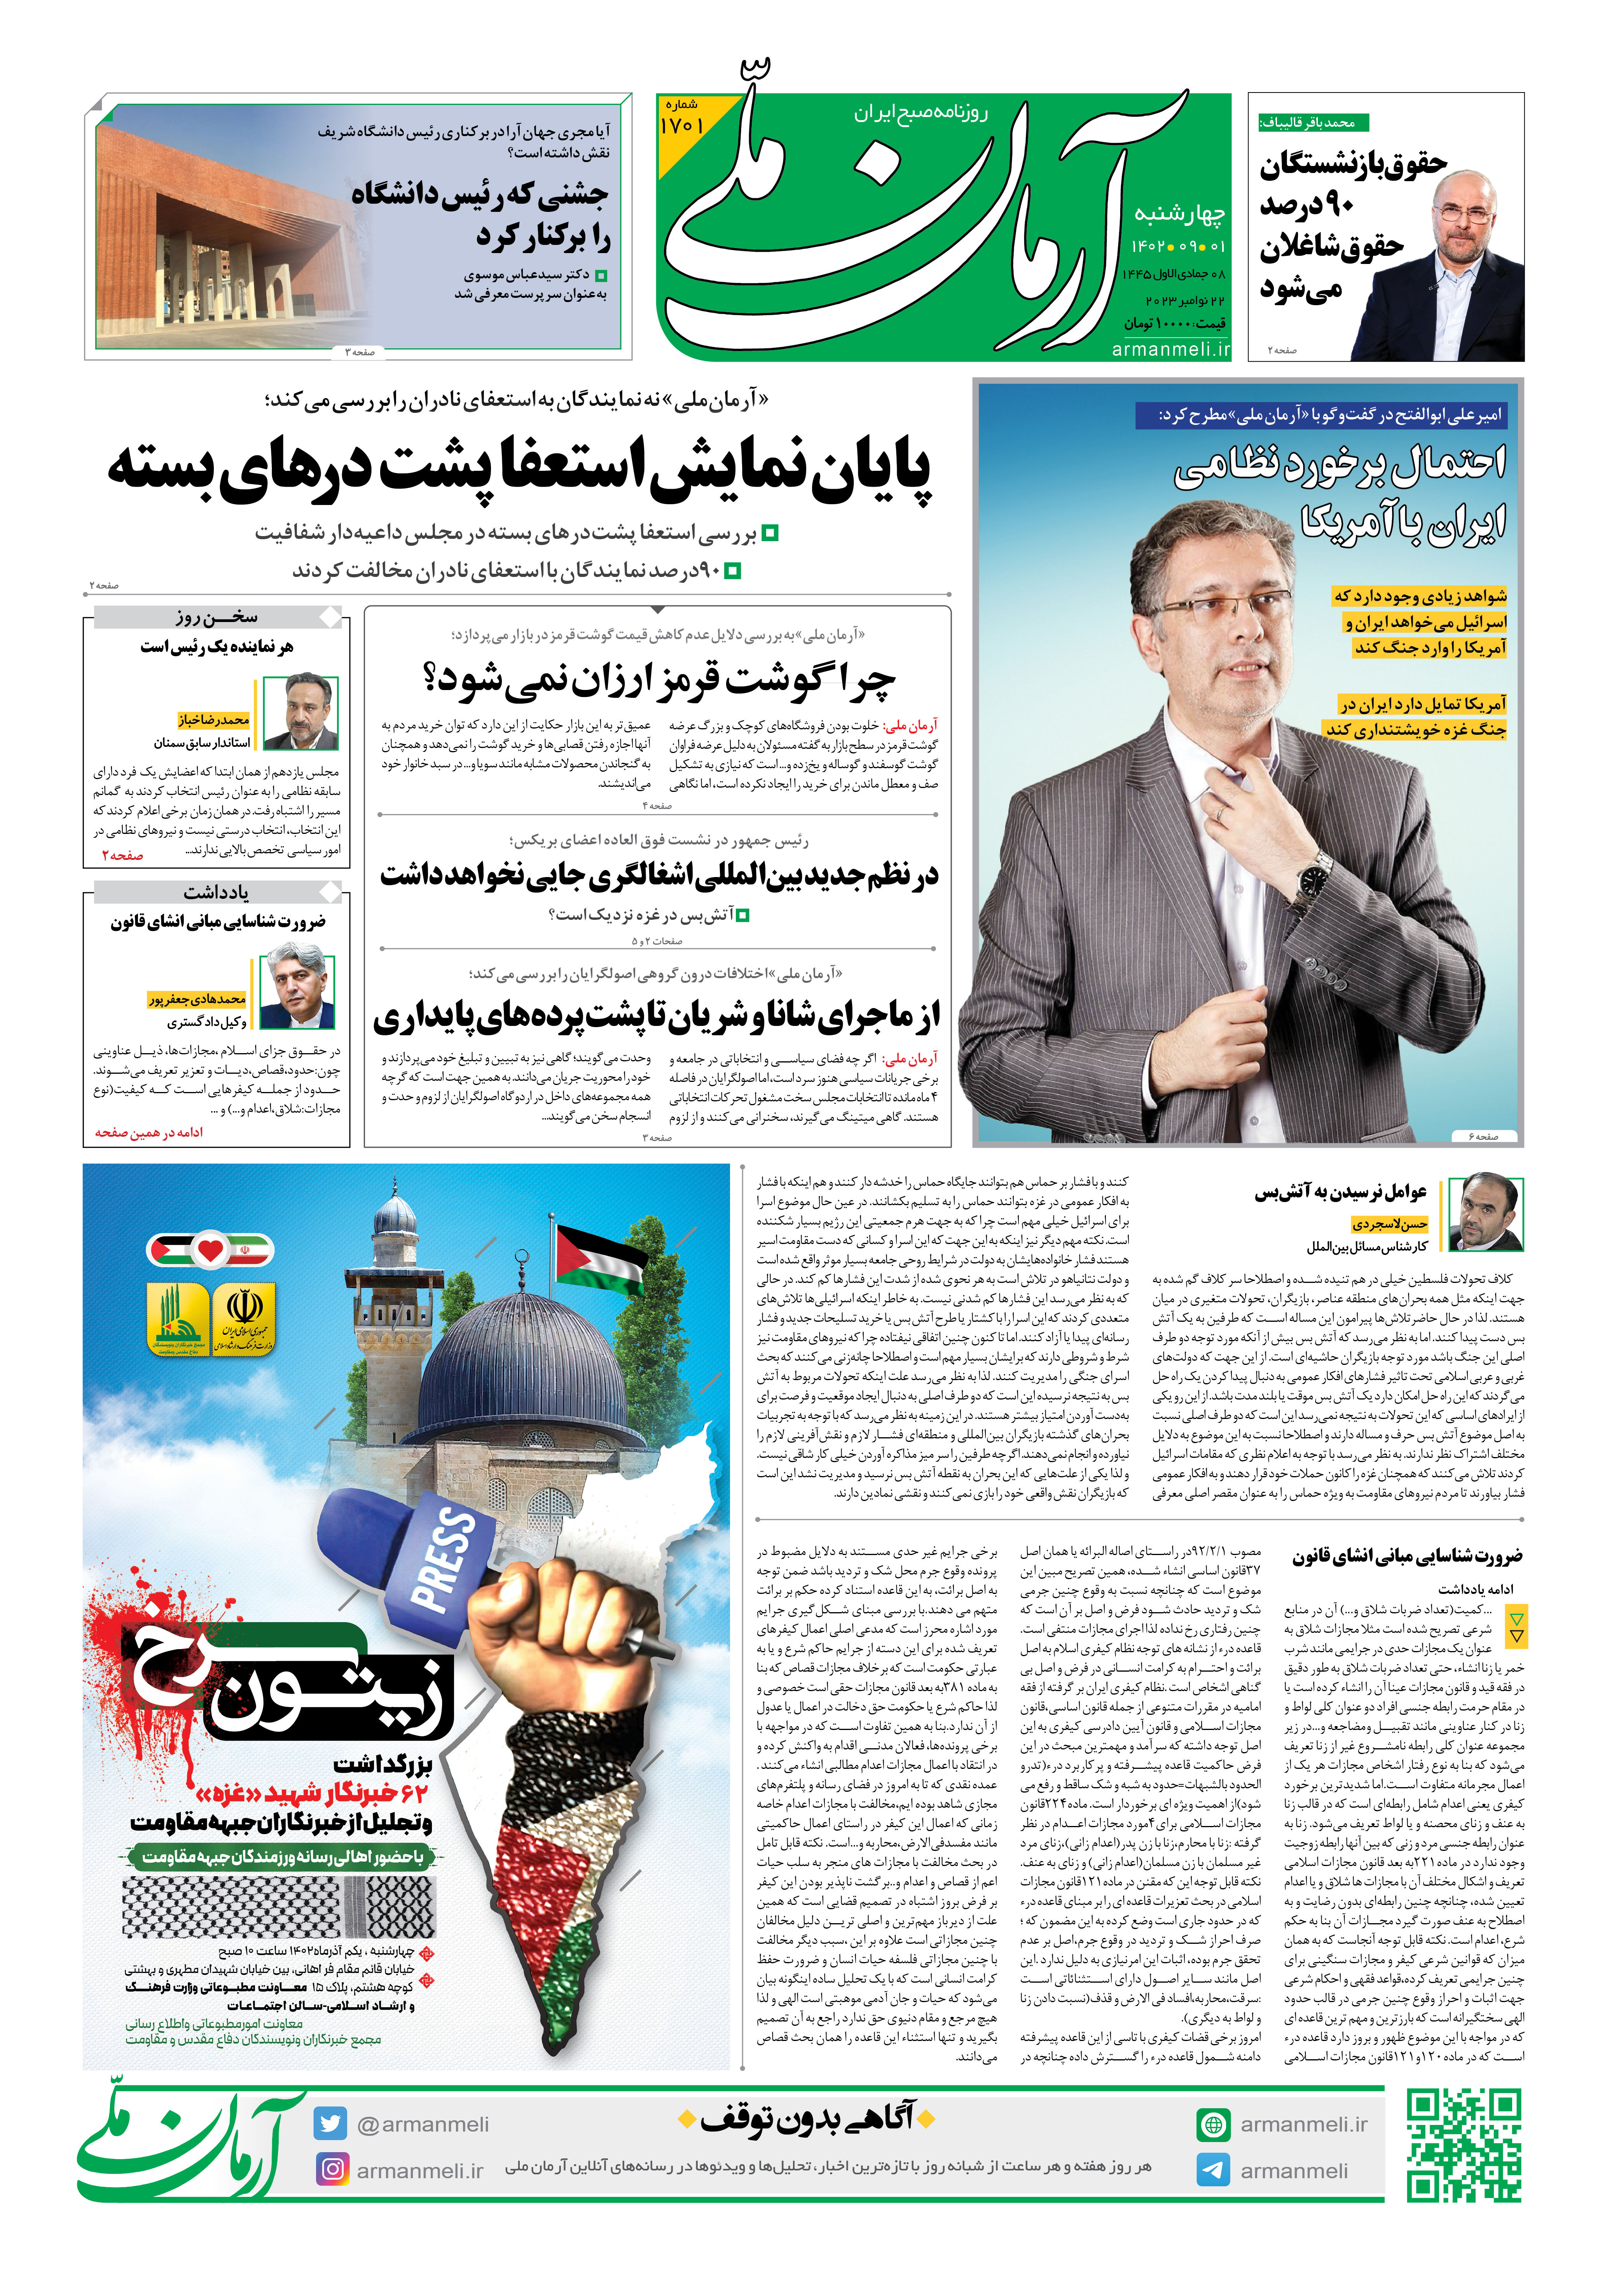 روزنامه آرمان ملی - چهارشنبه 1 آذر - شماره 1701